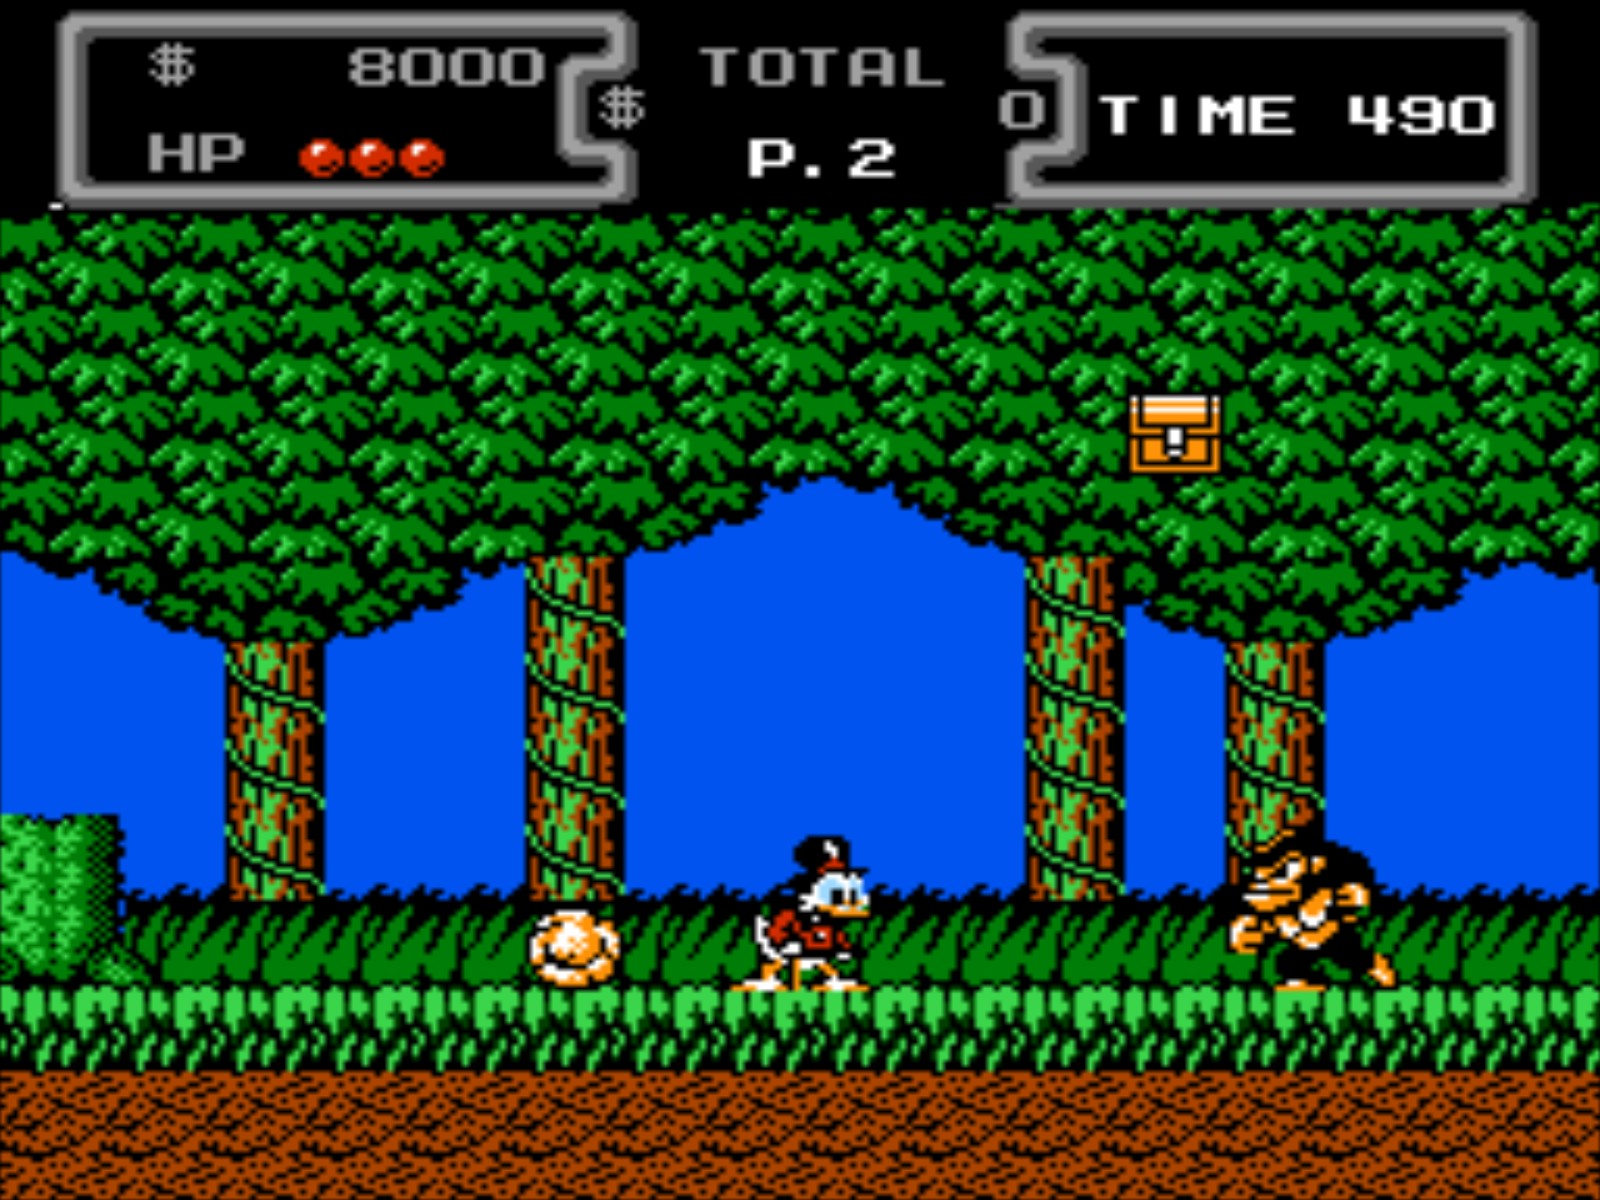 Названия игр на денди на английском. Duck Tales игра 1990. Dendy ty-888. Денди приставка игры. Sega Денди.